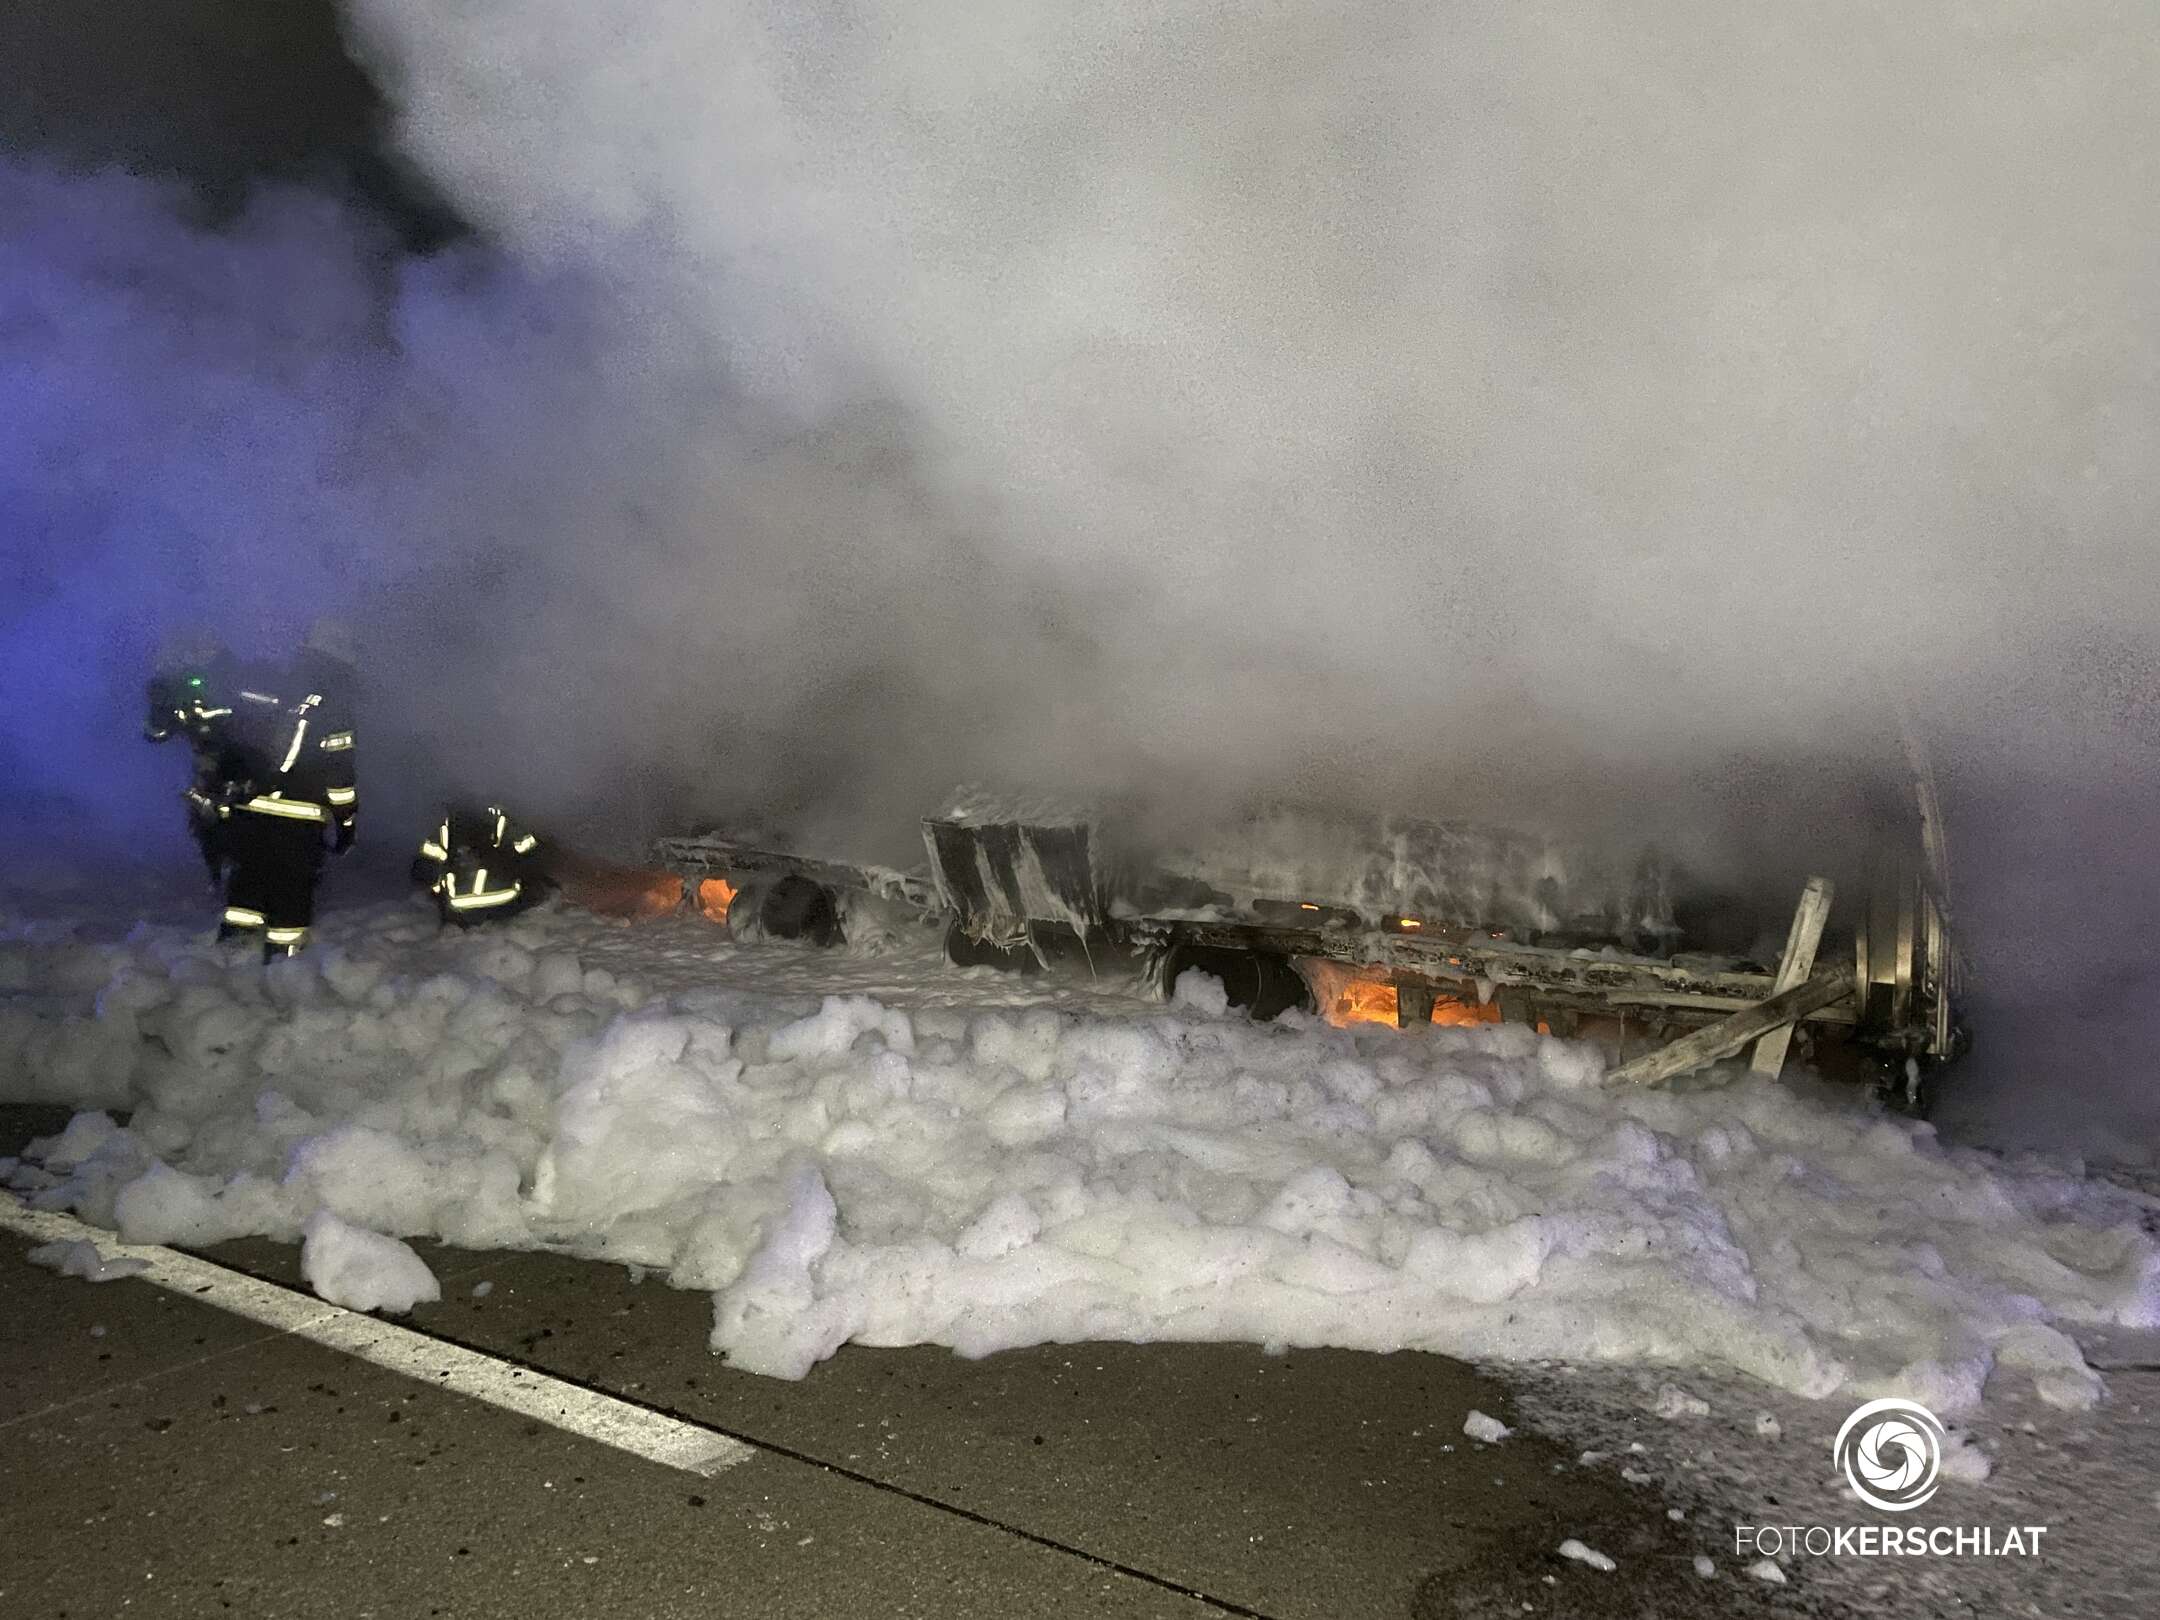 LKW-Aufleger brennt - Autobahn gesperrt